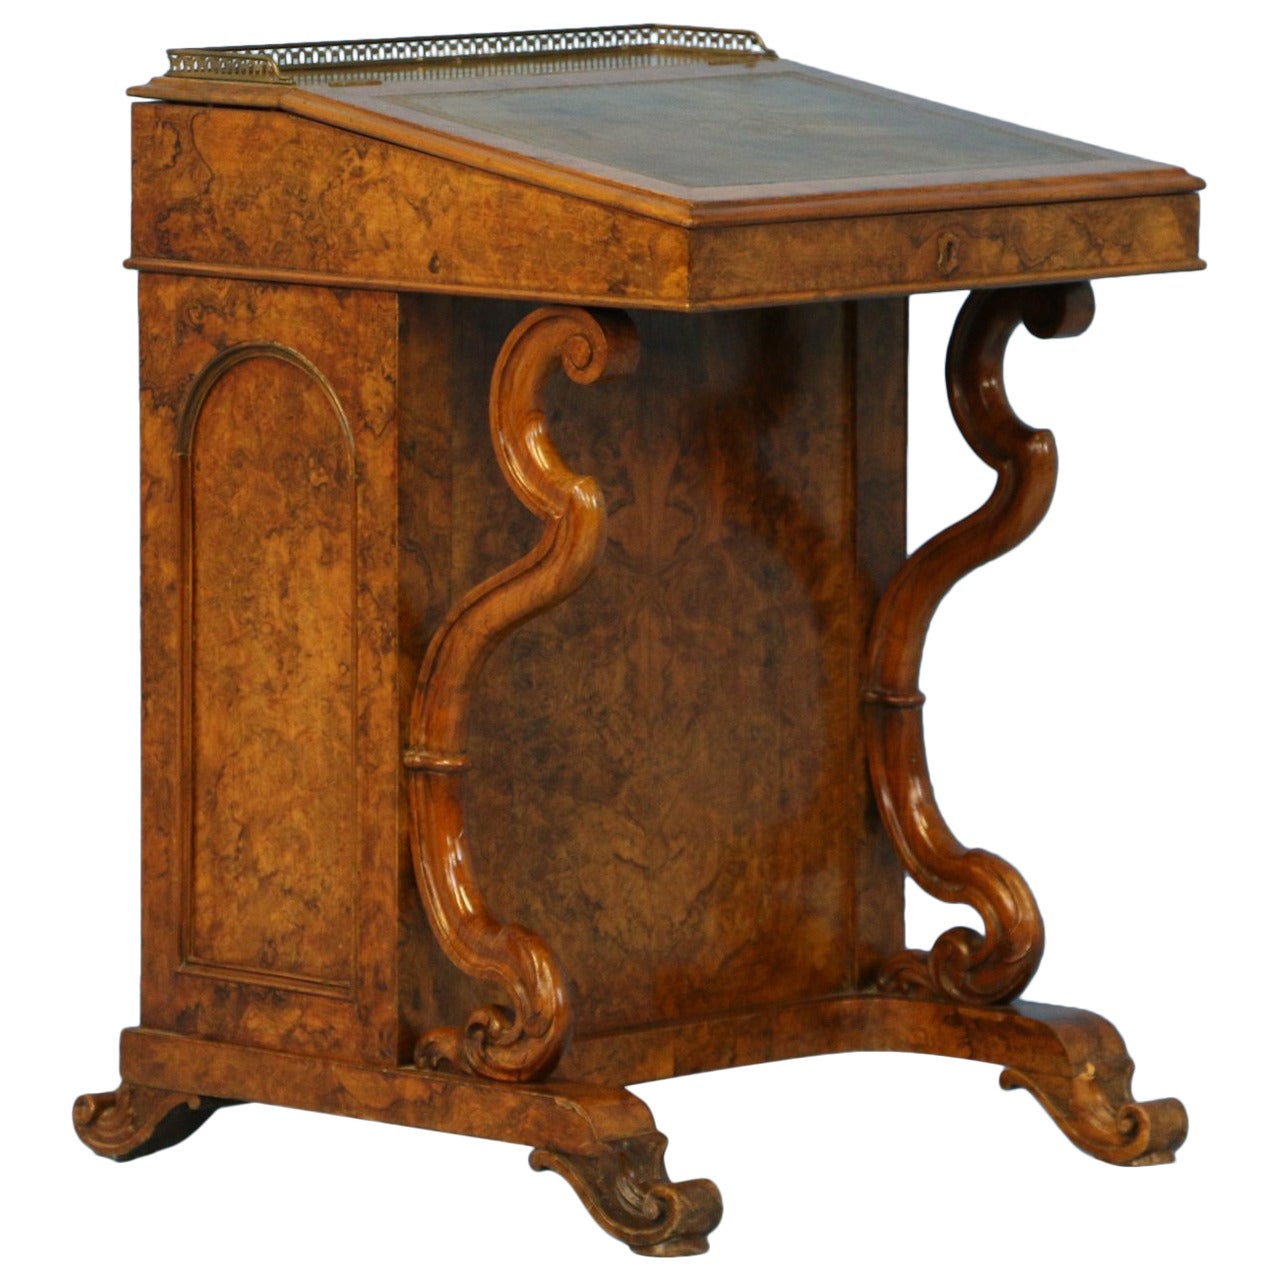 Antique English Davenport Desk, circa 1800